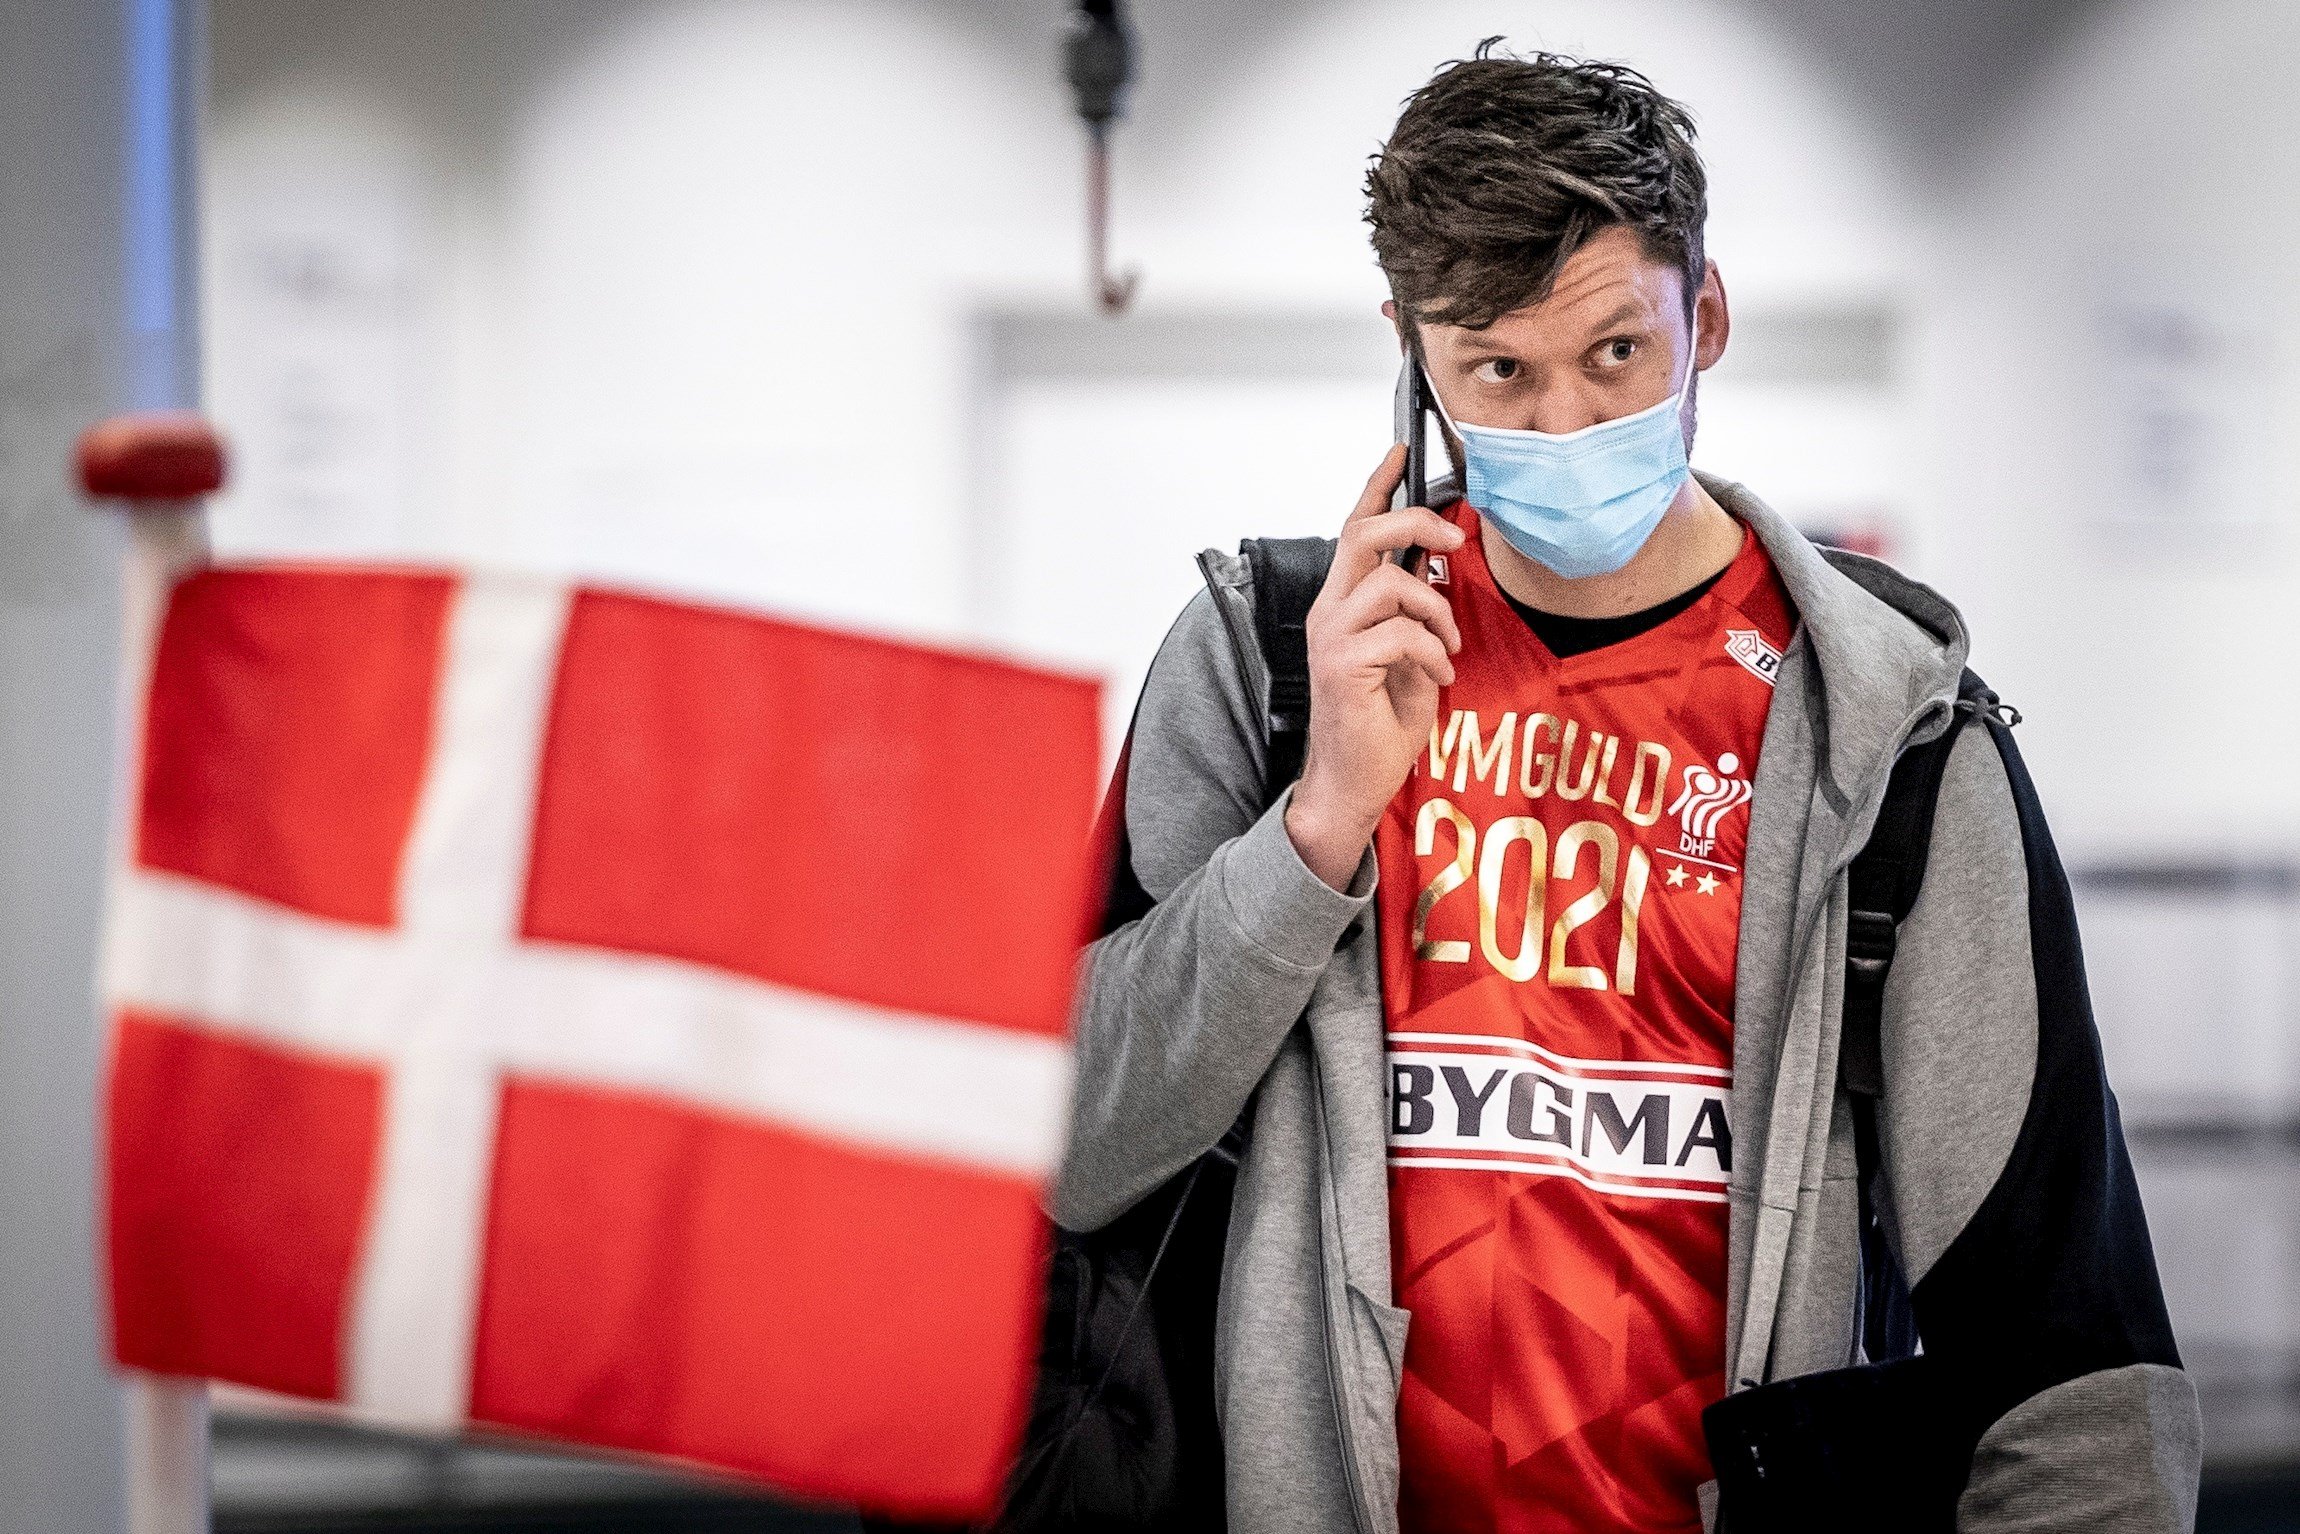 Dinamarca proporcionará un pasaporte digital para los vacunados de Covid